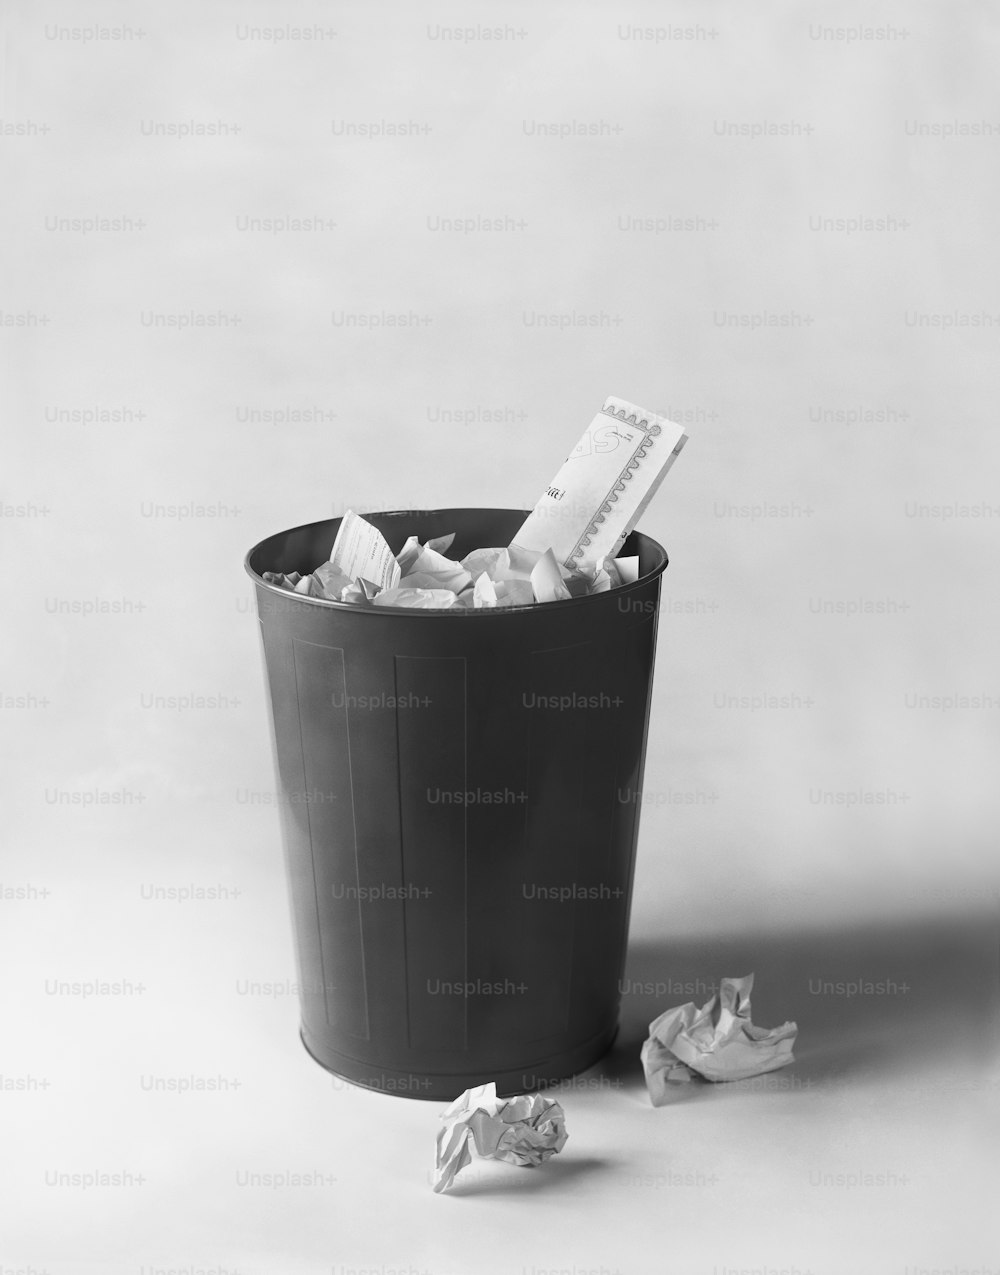 una foto in bianco e nero di un bidone della spazzatura